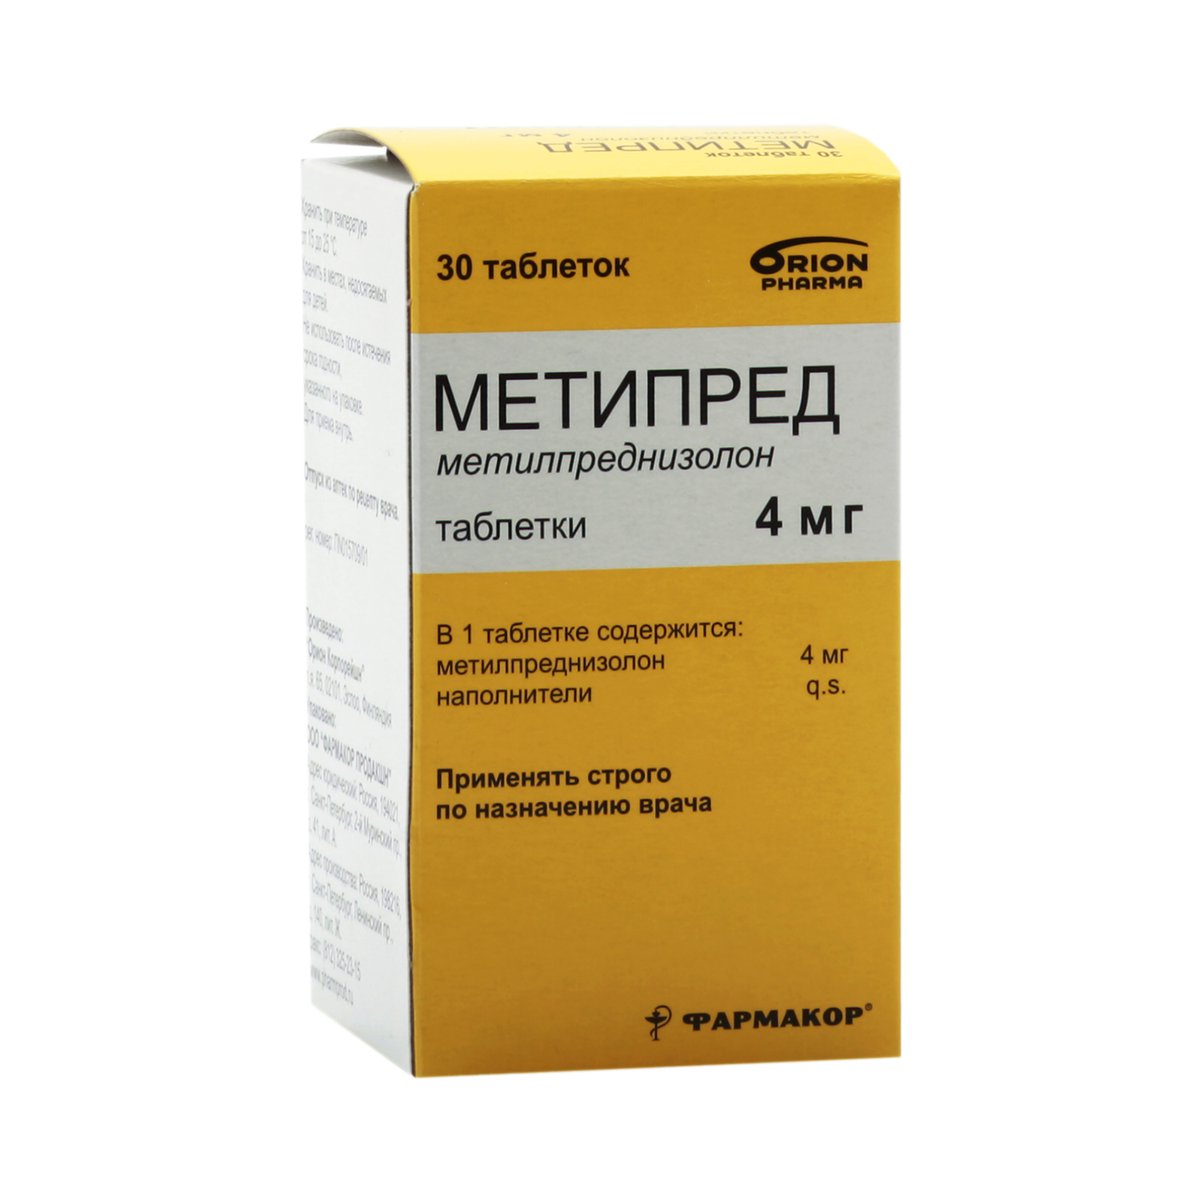 Метипред (таблетки, 30 шт, 4 мг) - цена,  онлайн  .